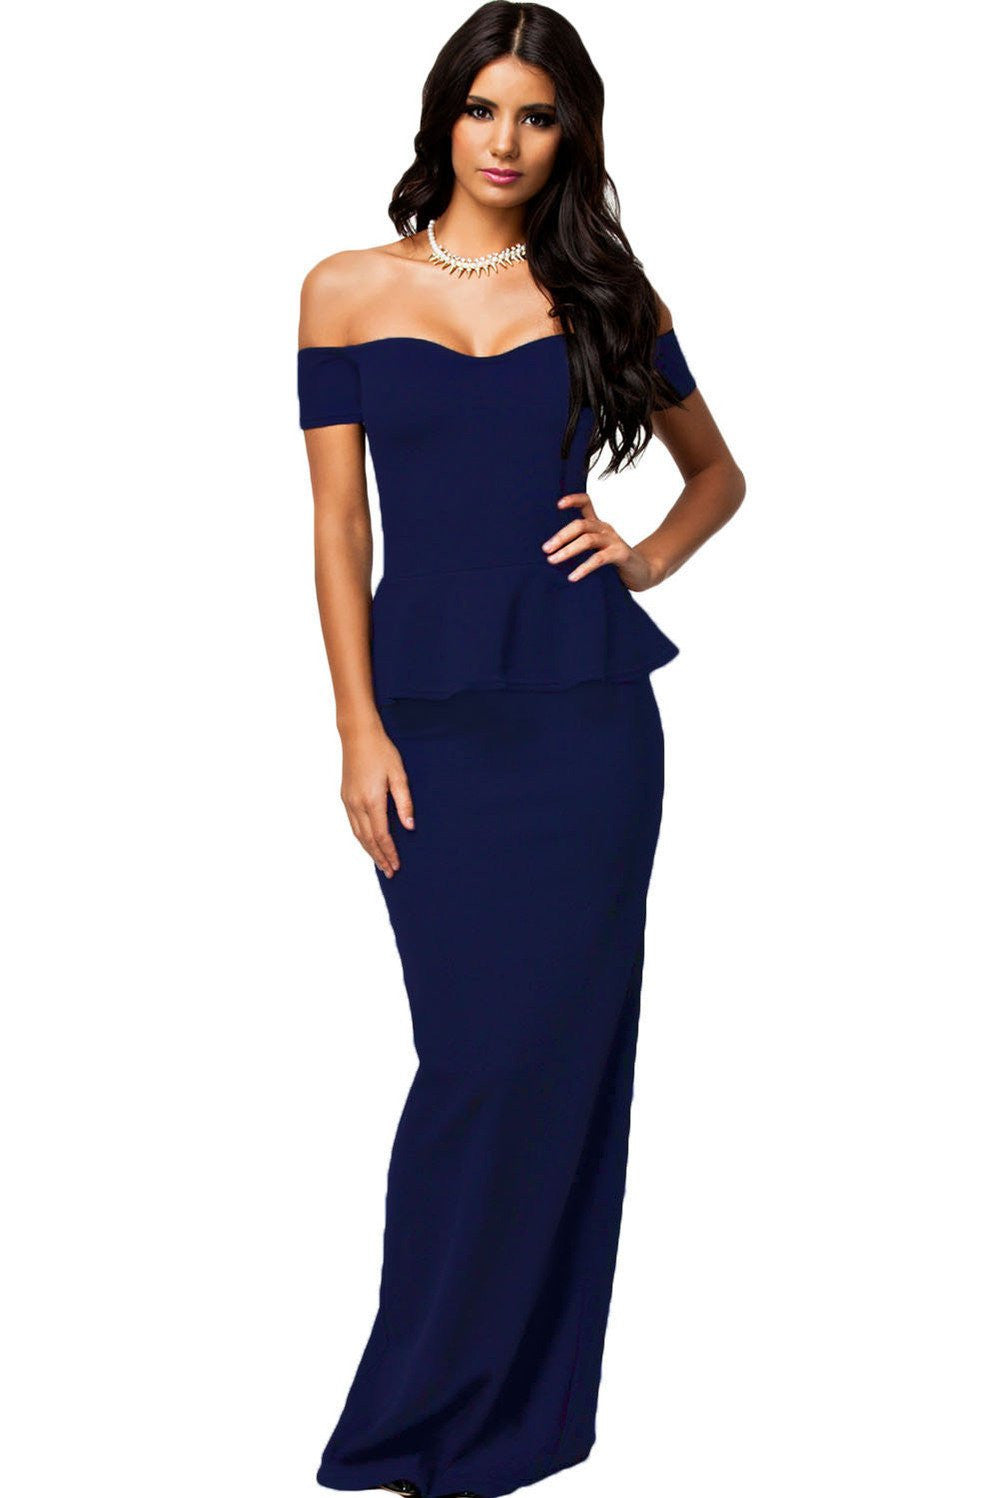 Women Dress 3 Colors Peplum Dress With Off shoulder Maxi Dress LC6244 plus size M-XXL Party Dress Vestidos